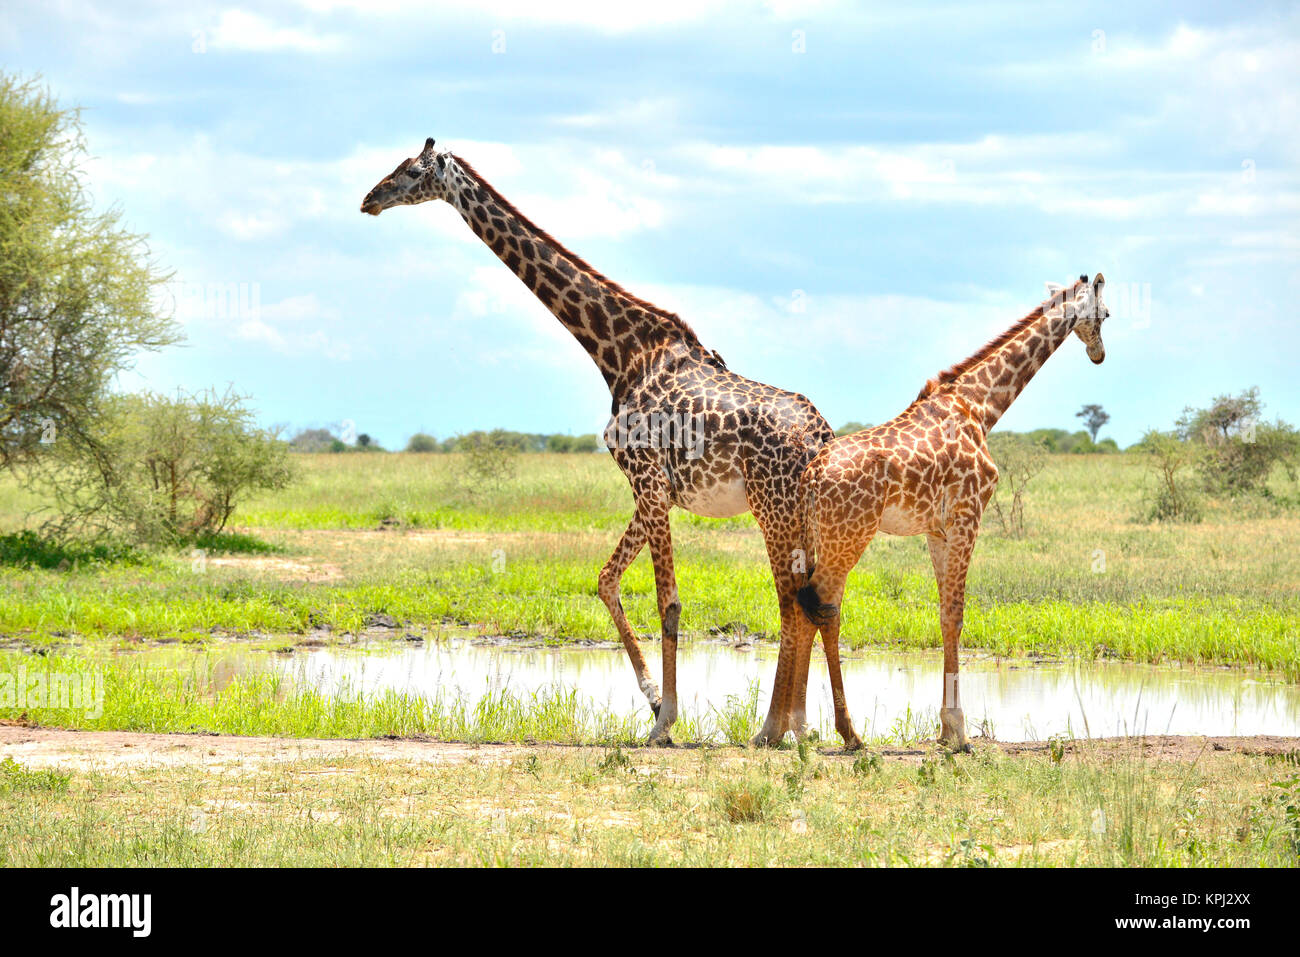 Parc national de Tarangire en Tanzanie est un bijou avec de beaux paysages le long de la rivière Tarangire. Girafe l'eau potable à la casserole. Banque D'Images